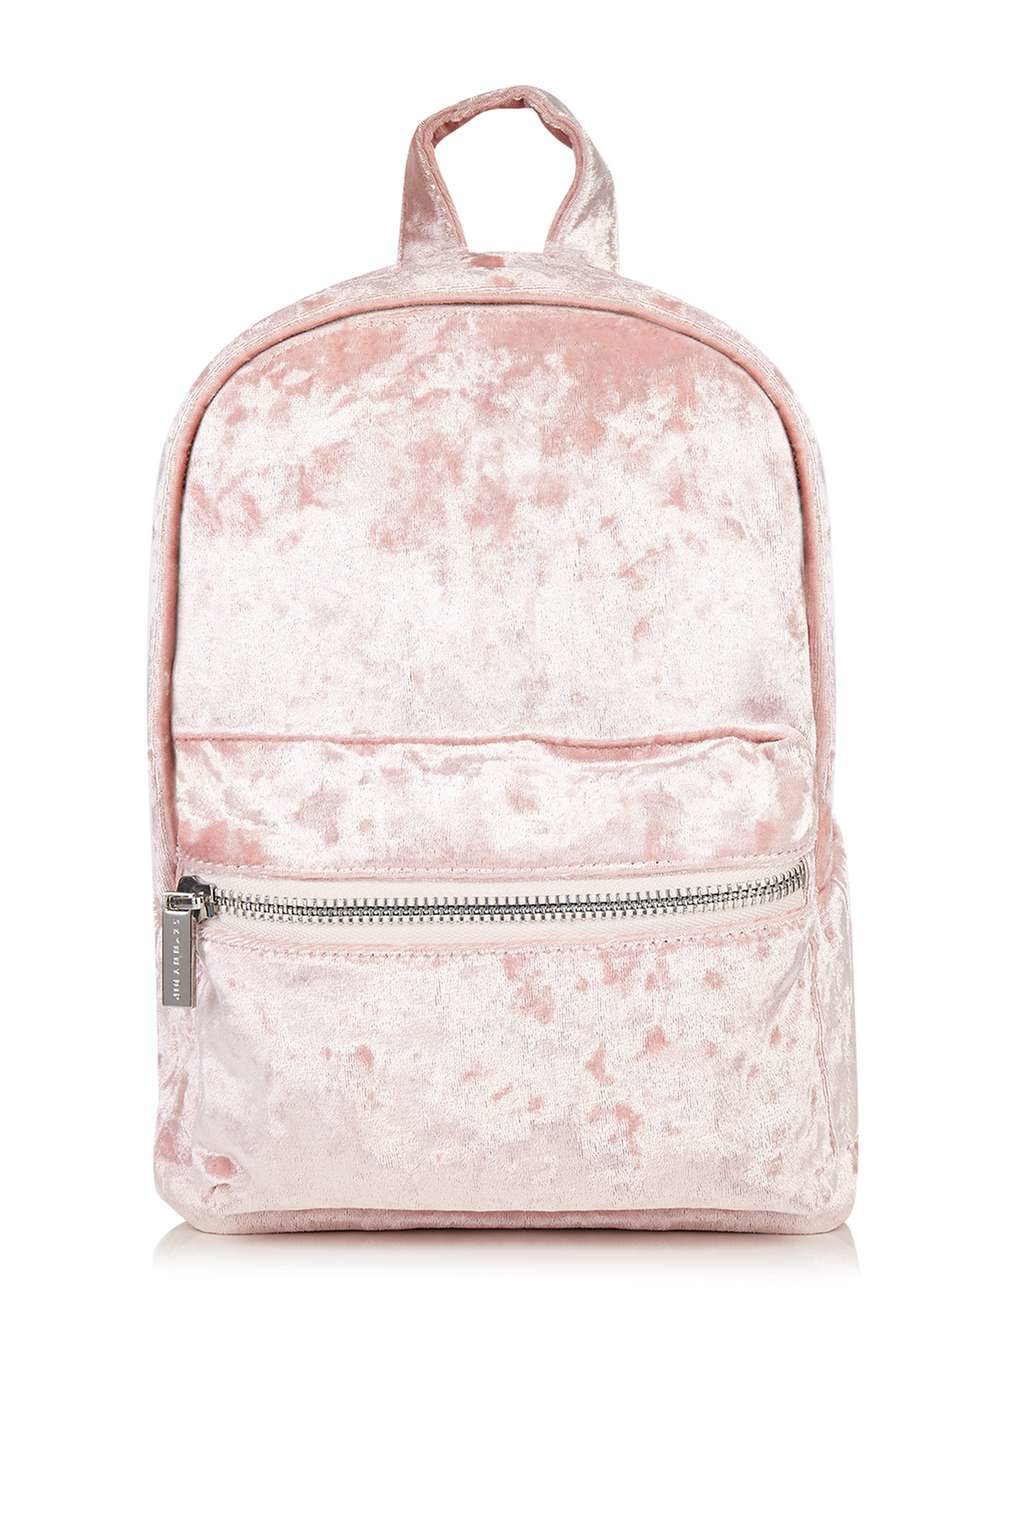 Topshop Pink Velvet Backpack By Skinny Dip in Pink | Lyst